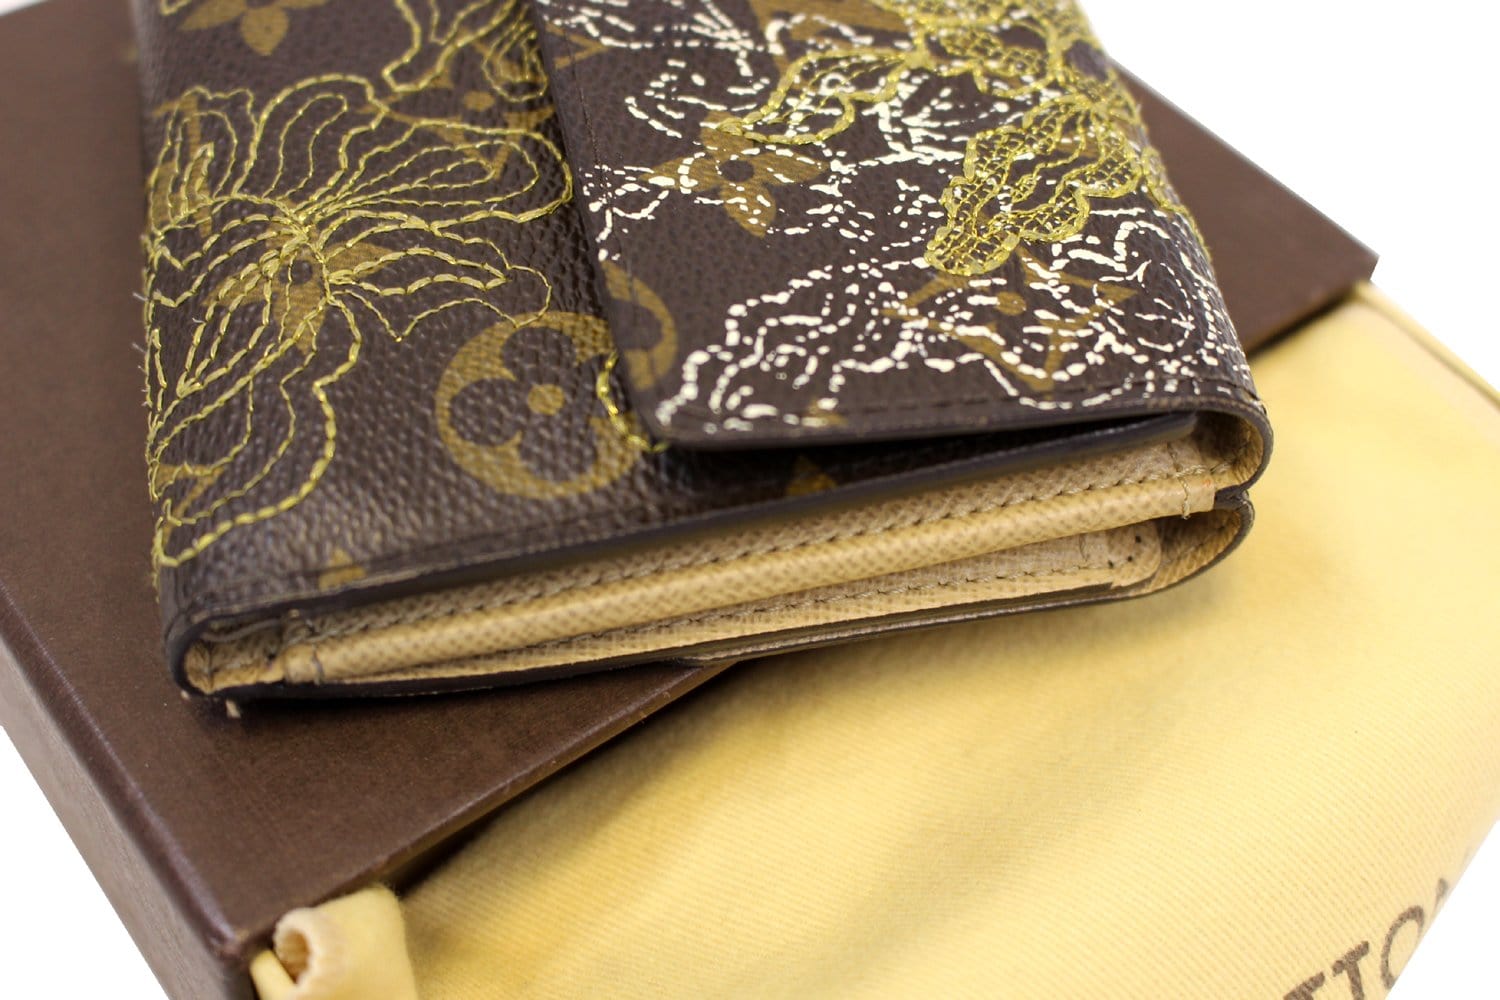 Louis Vuitton, Bags, Authentic Louis Vuitton Trifold Wallet Monogram